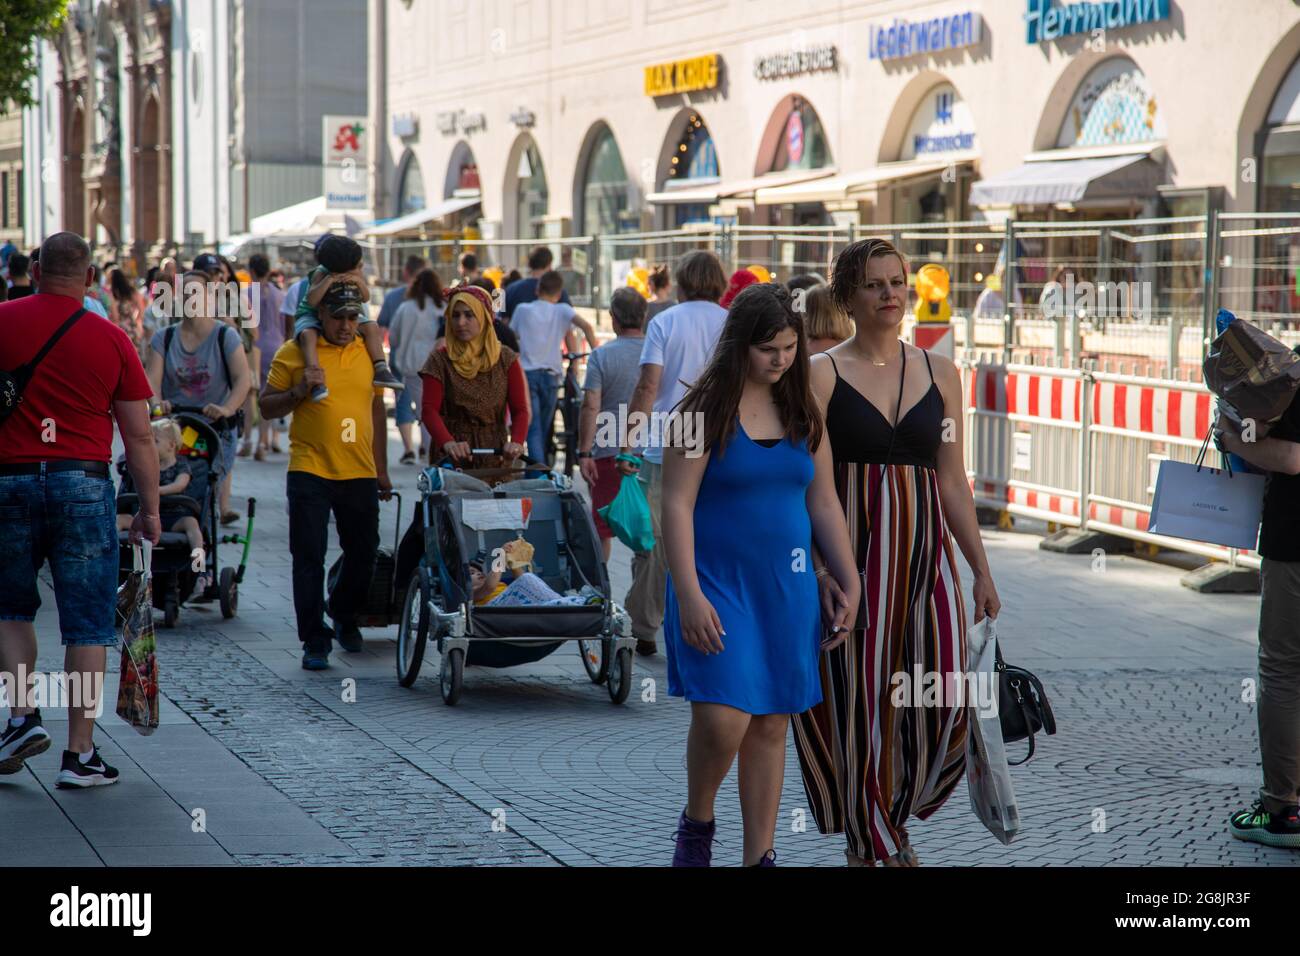 Menschen am 13. Juni 2020 sind in der Fußgängerzone in München trotz Corona in bester Kauflaune. Die Straßen und Geschäfte sind voll. (Photo by Alexander Pohl/Sipa USA) Credit: Sipa USA/Alamy Live News Stock Photo